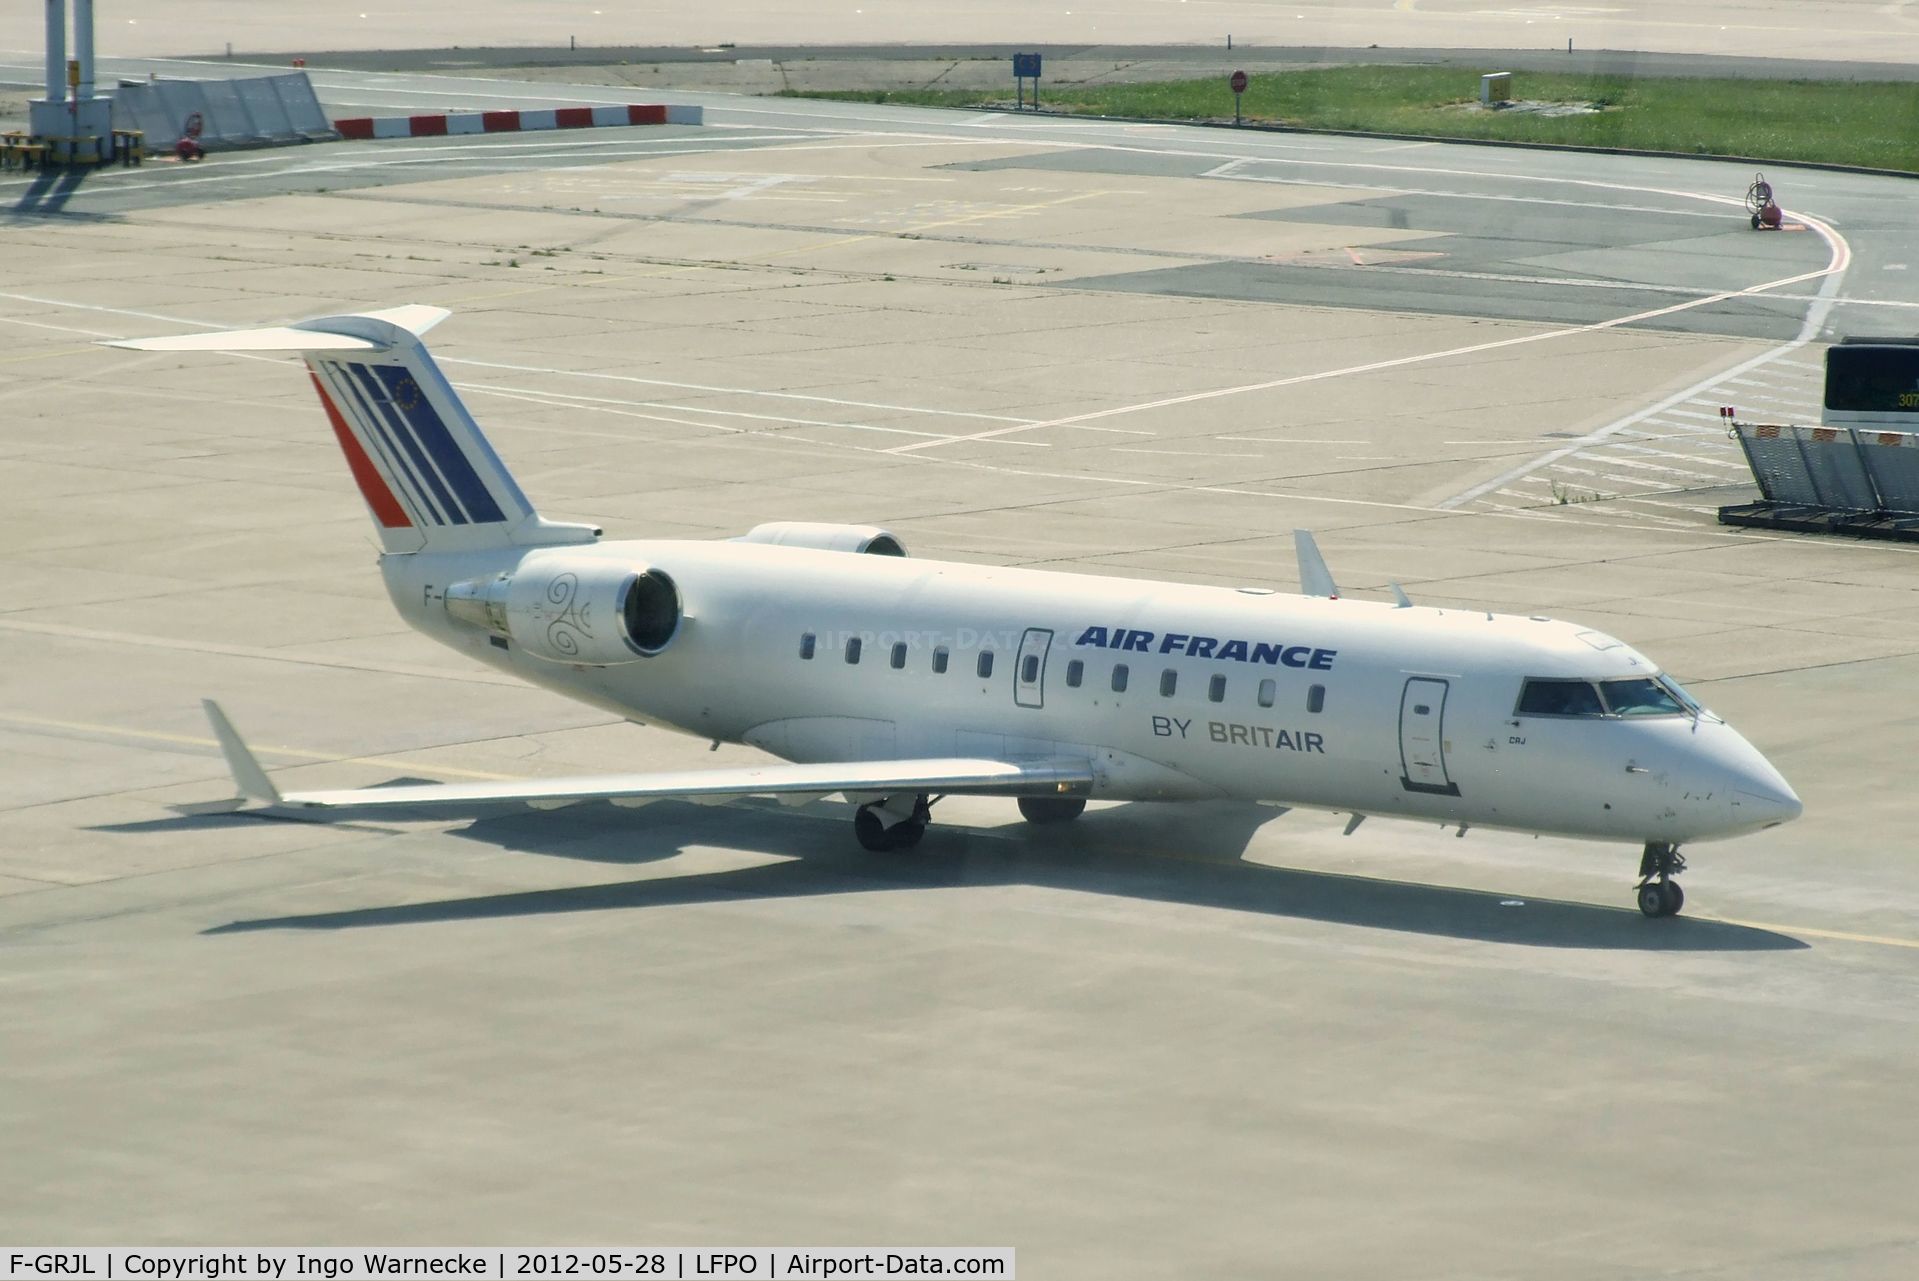 F-GRJL, 1998 Canadair CRJ-100ER (CL-600-2B19) C/N 7221, Canadair CRJ-100ER (CL-600-2B19) of Air France by Brit Air at Paris-Orly airport